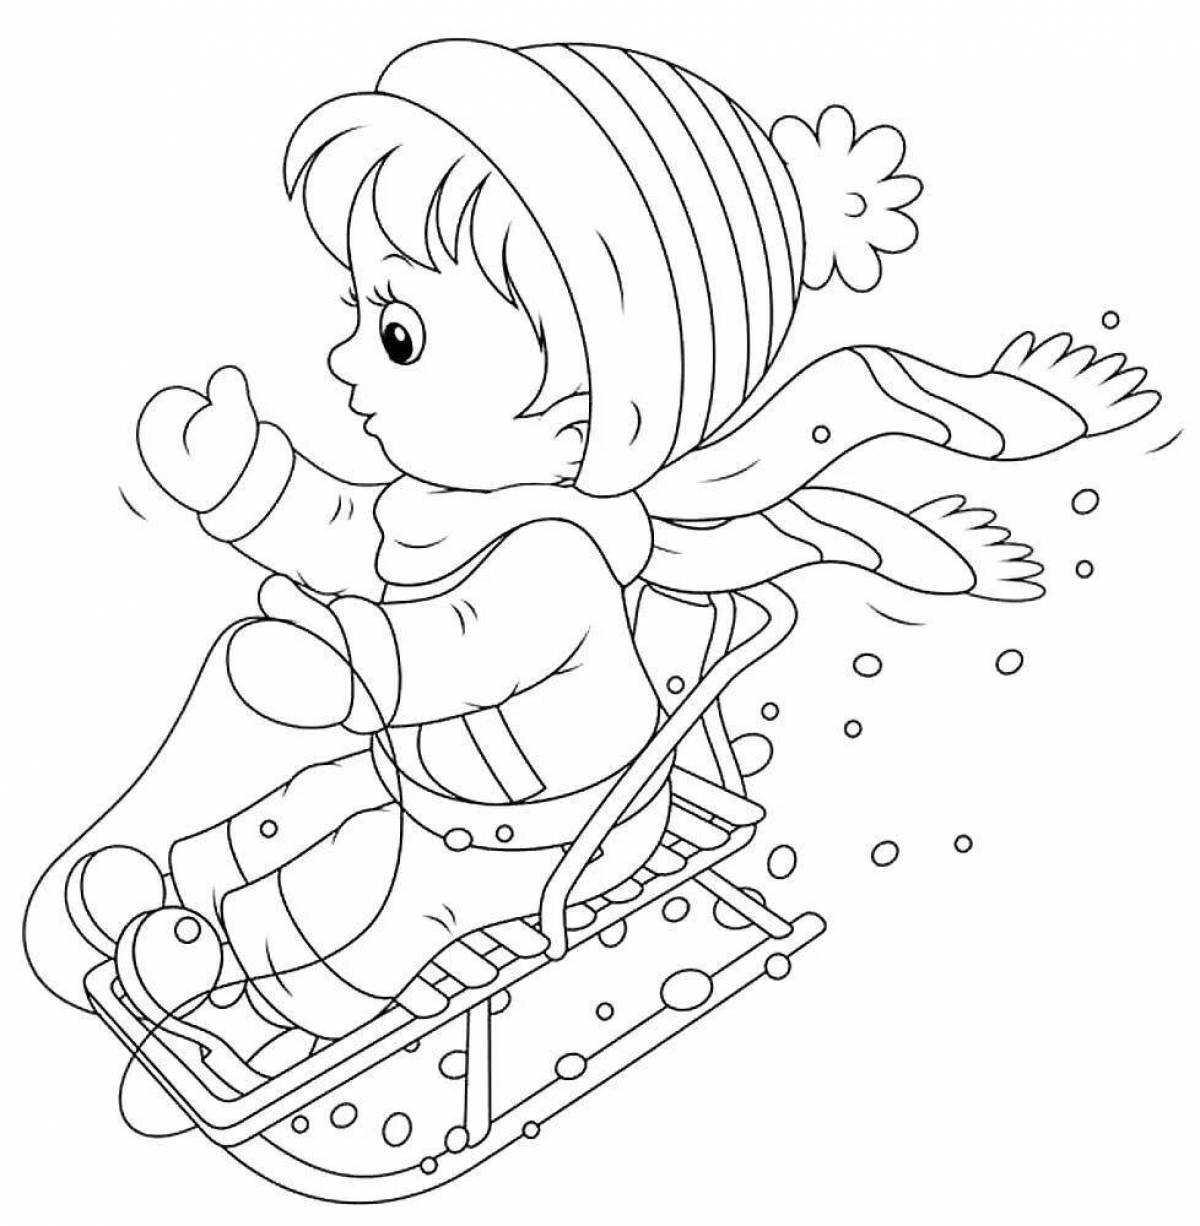 Coloring page joyful child sledding